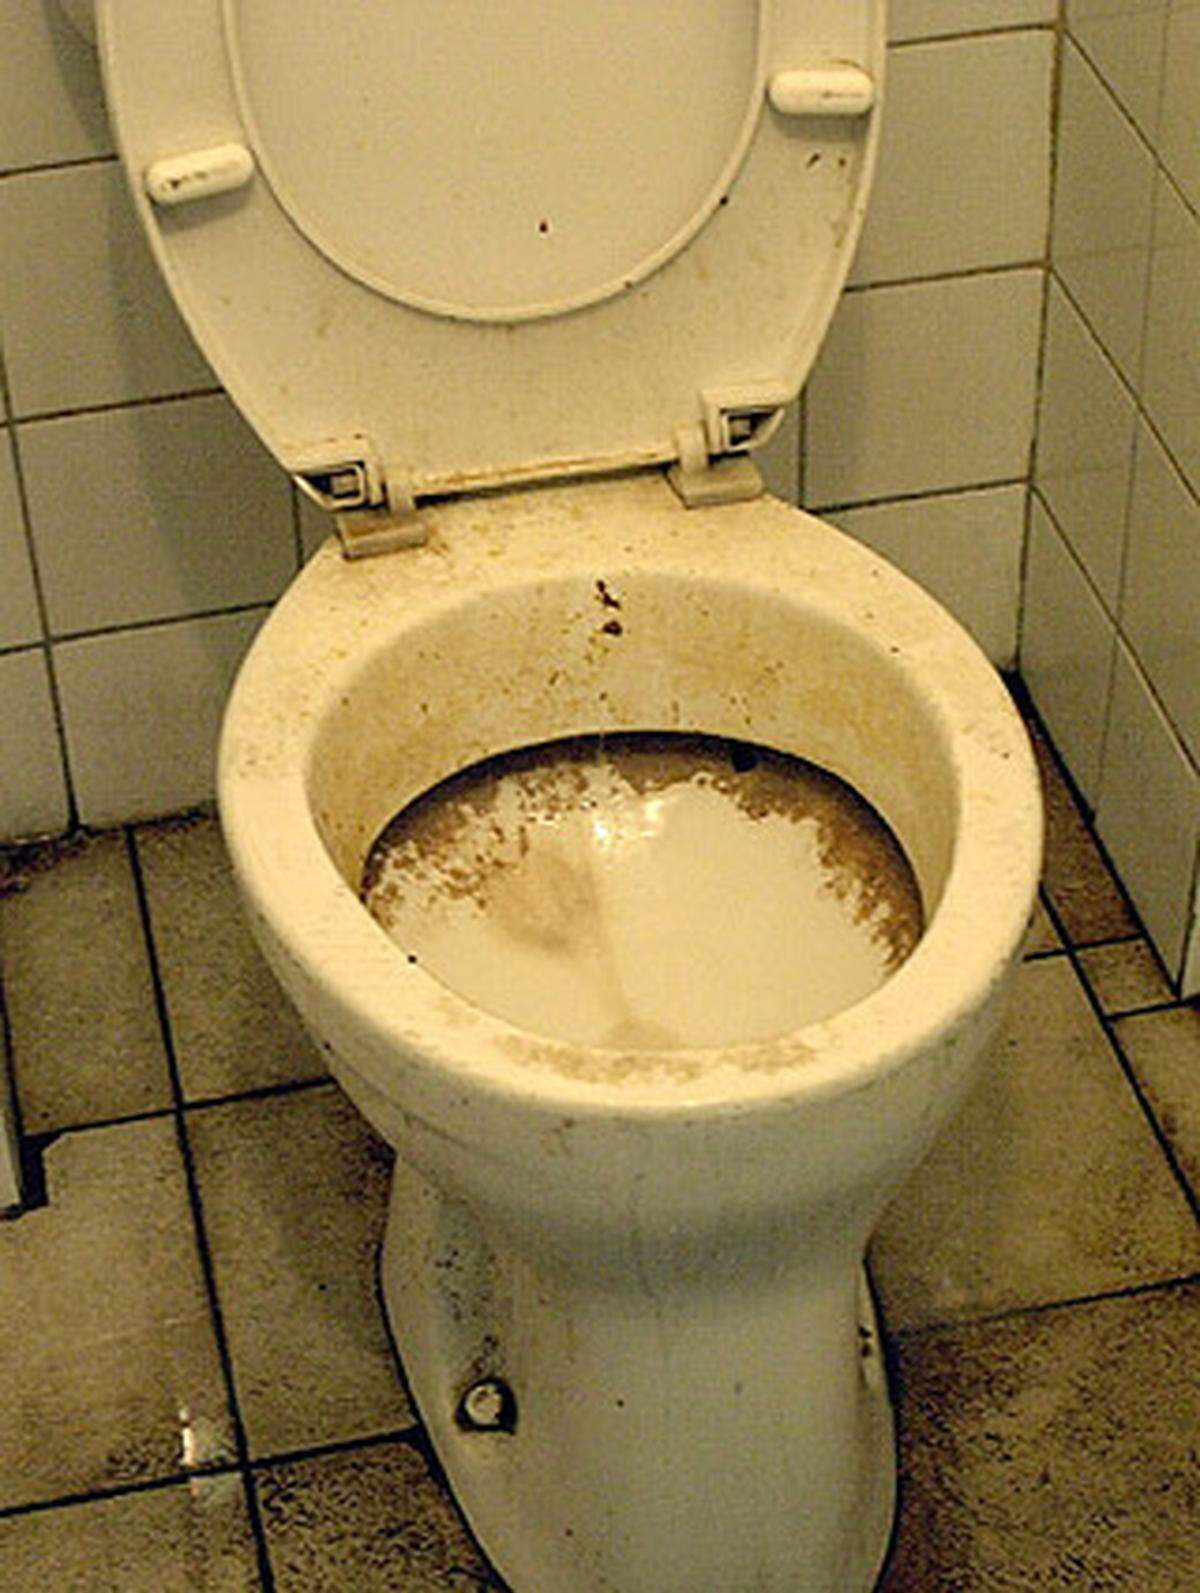 In Singapur kann mit 500 Euro Strafe belegt werden, wer nach der Benutzung vergißt, die Toilettenspülung zu betätigen. Polizisten in Zivil überprüfen regelmäßig die öffentlichen Toiletten.